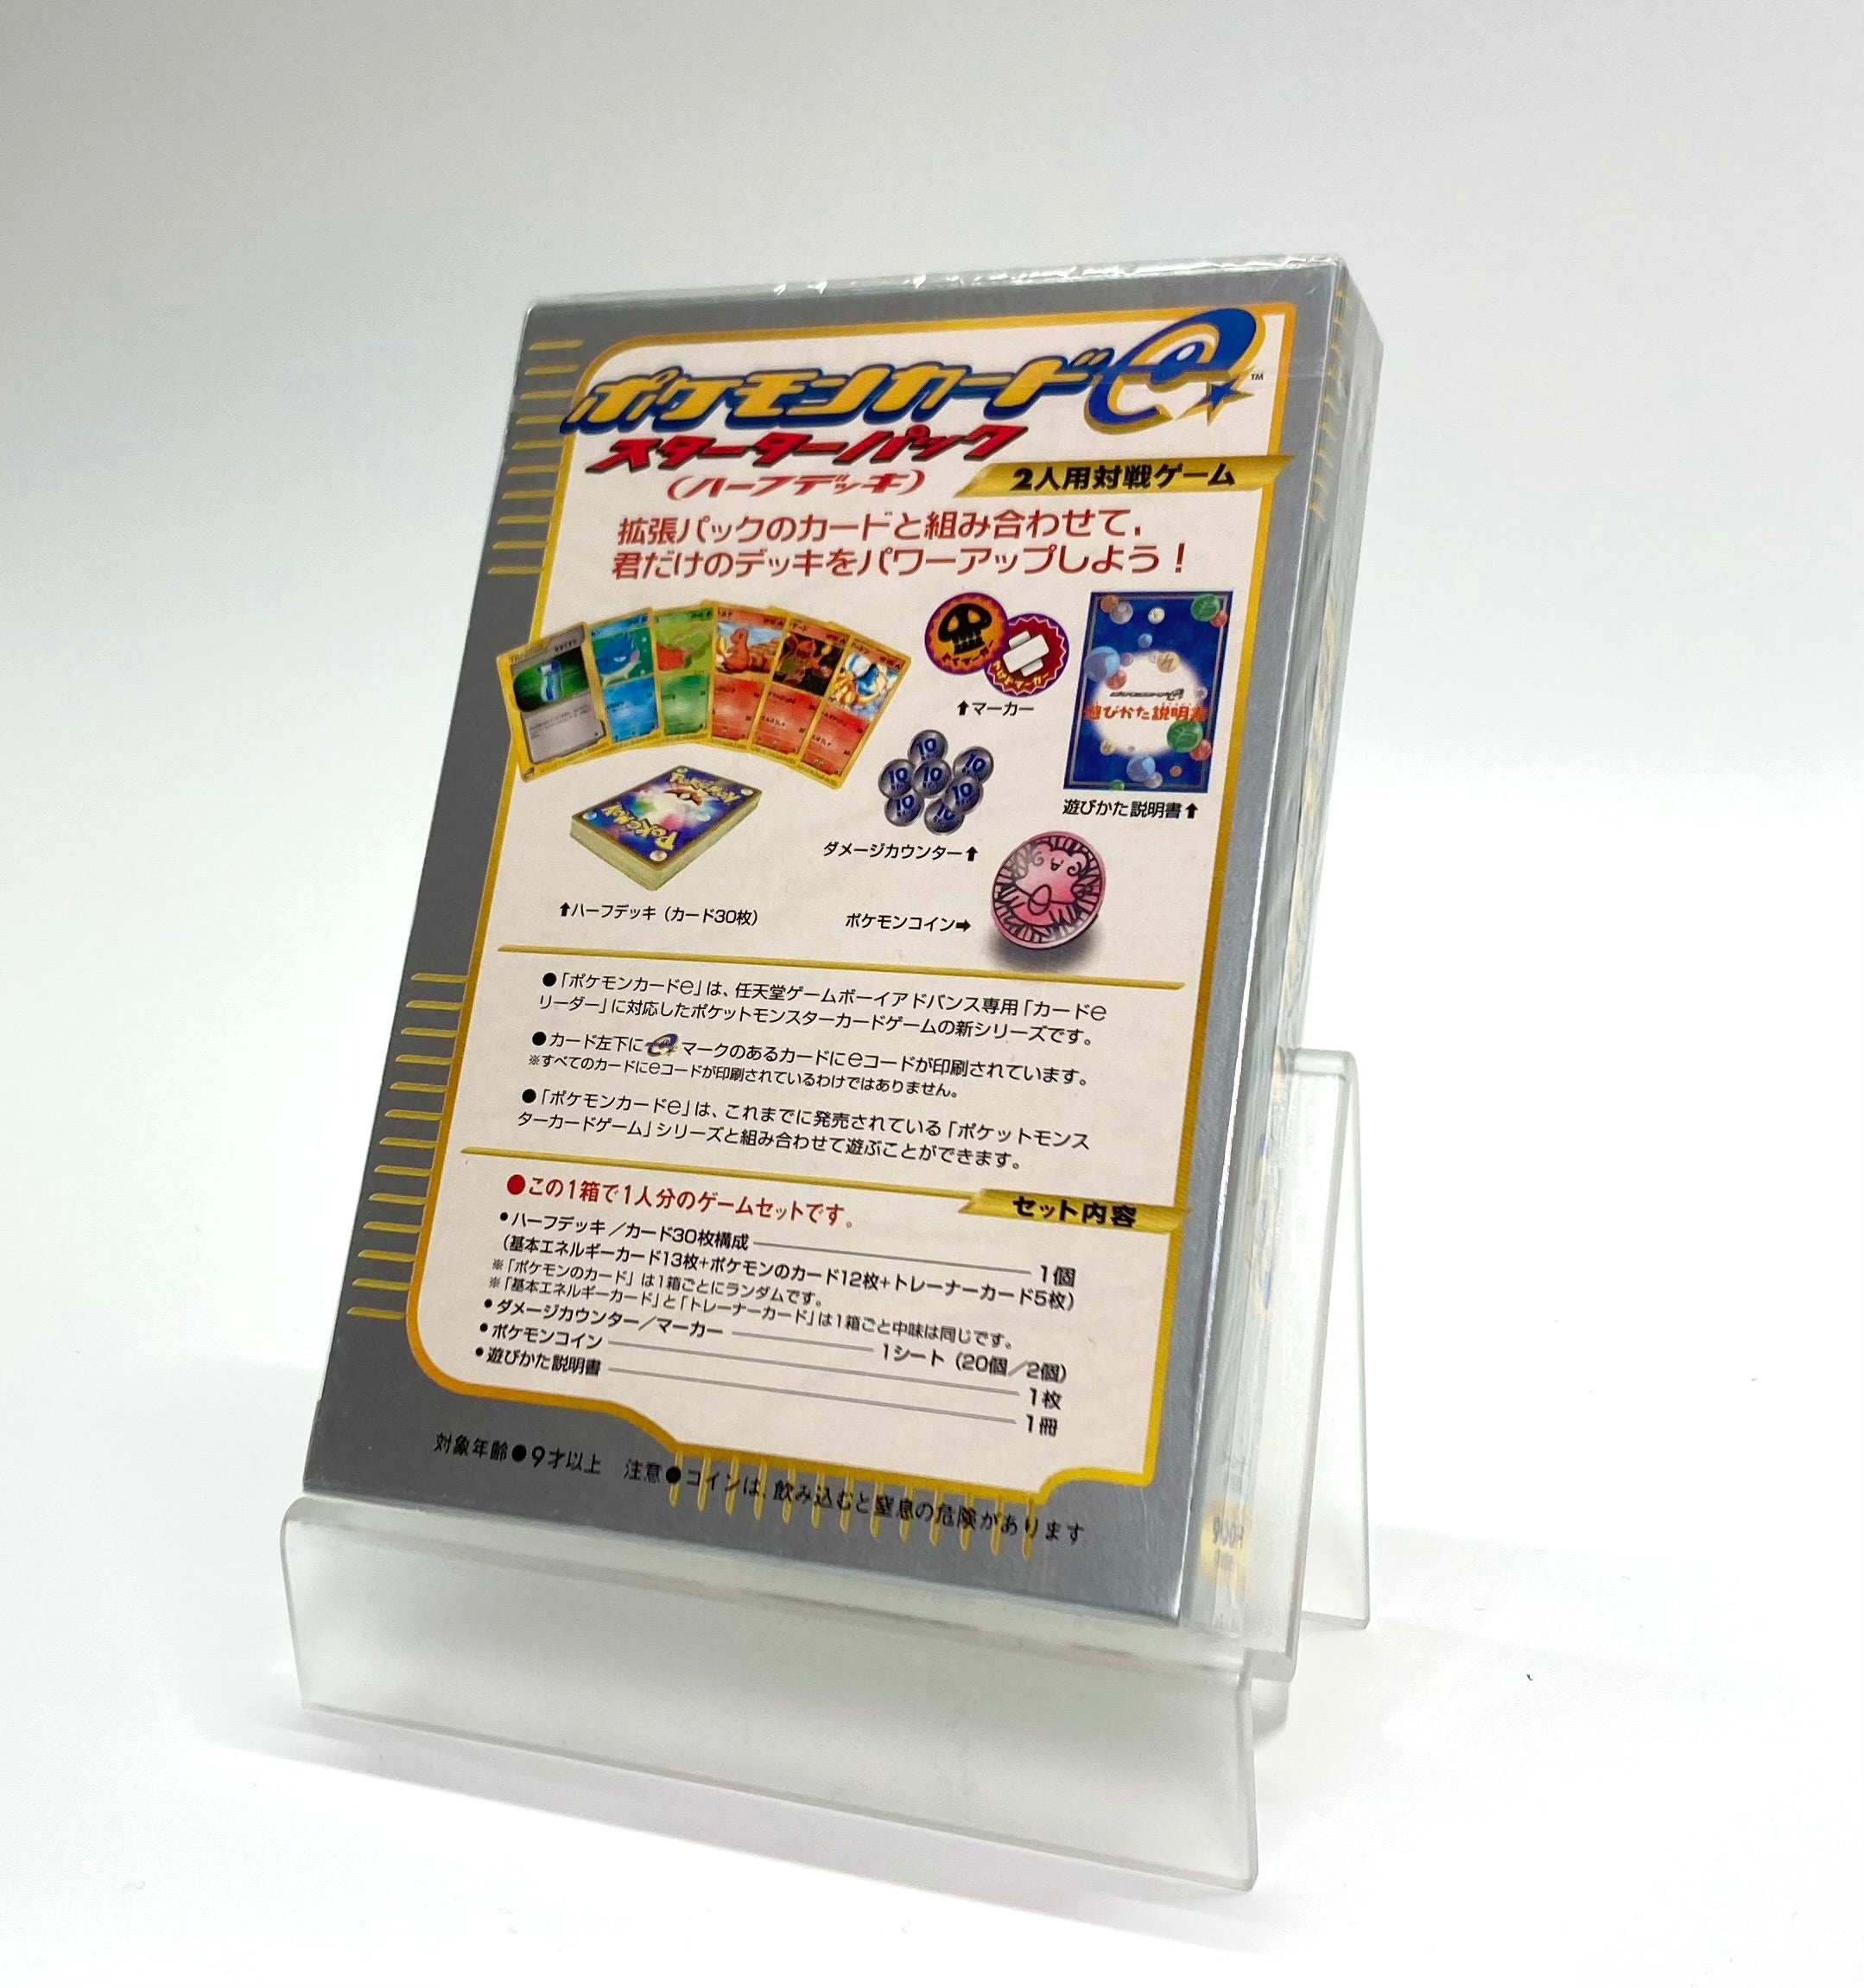 ポケモンカードwebvsポケモンカードe カードセット一冊